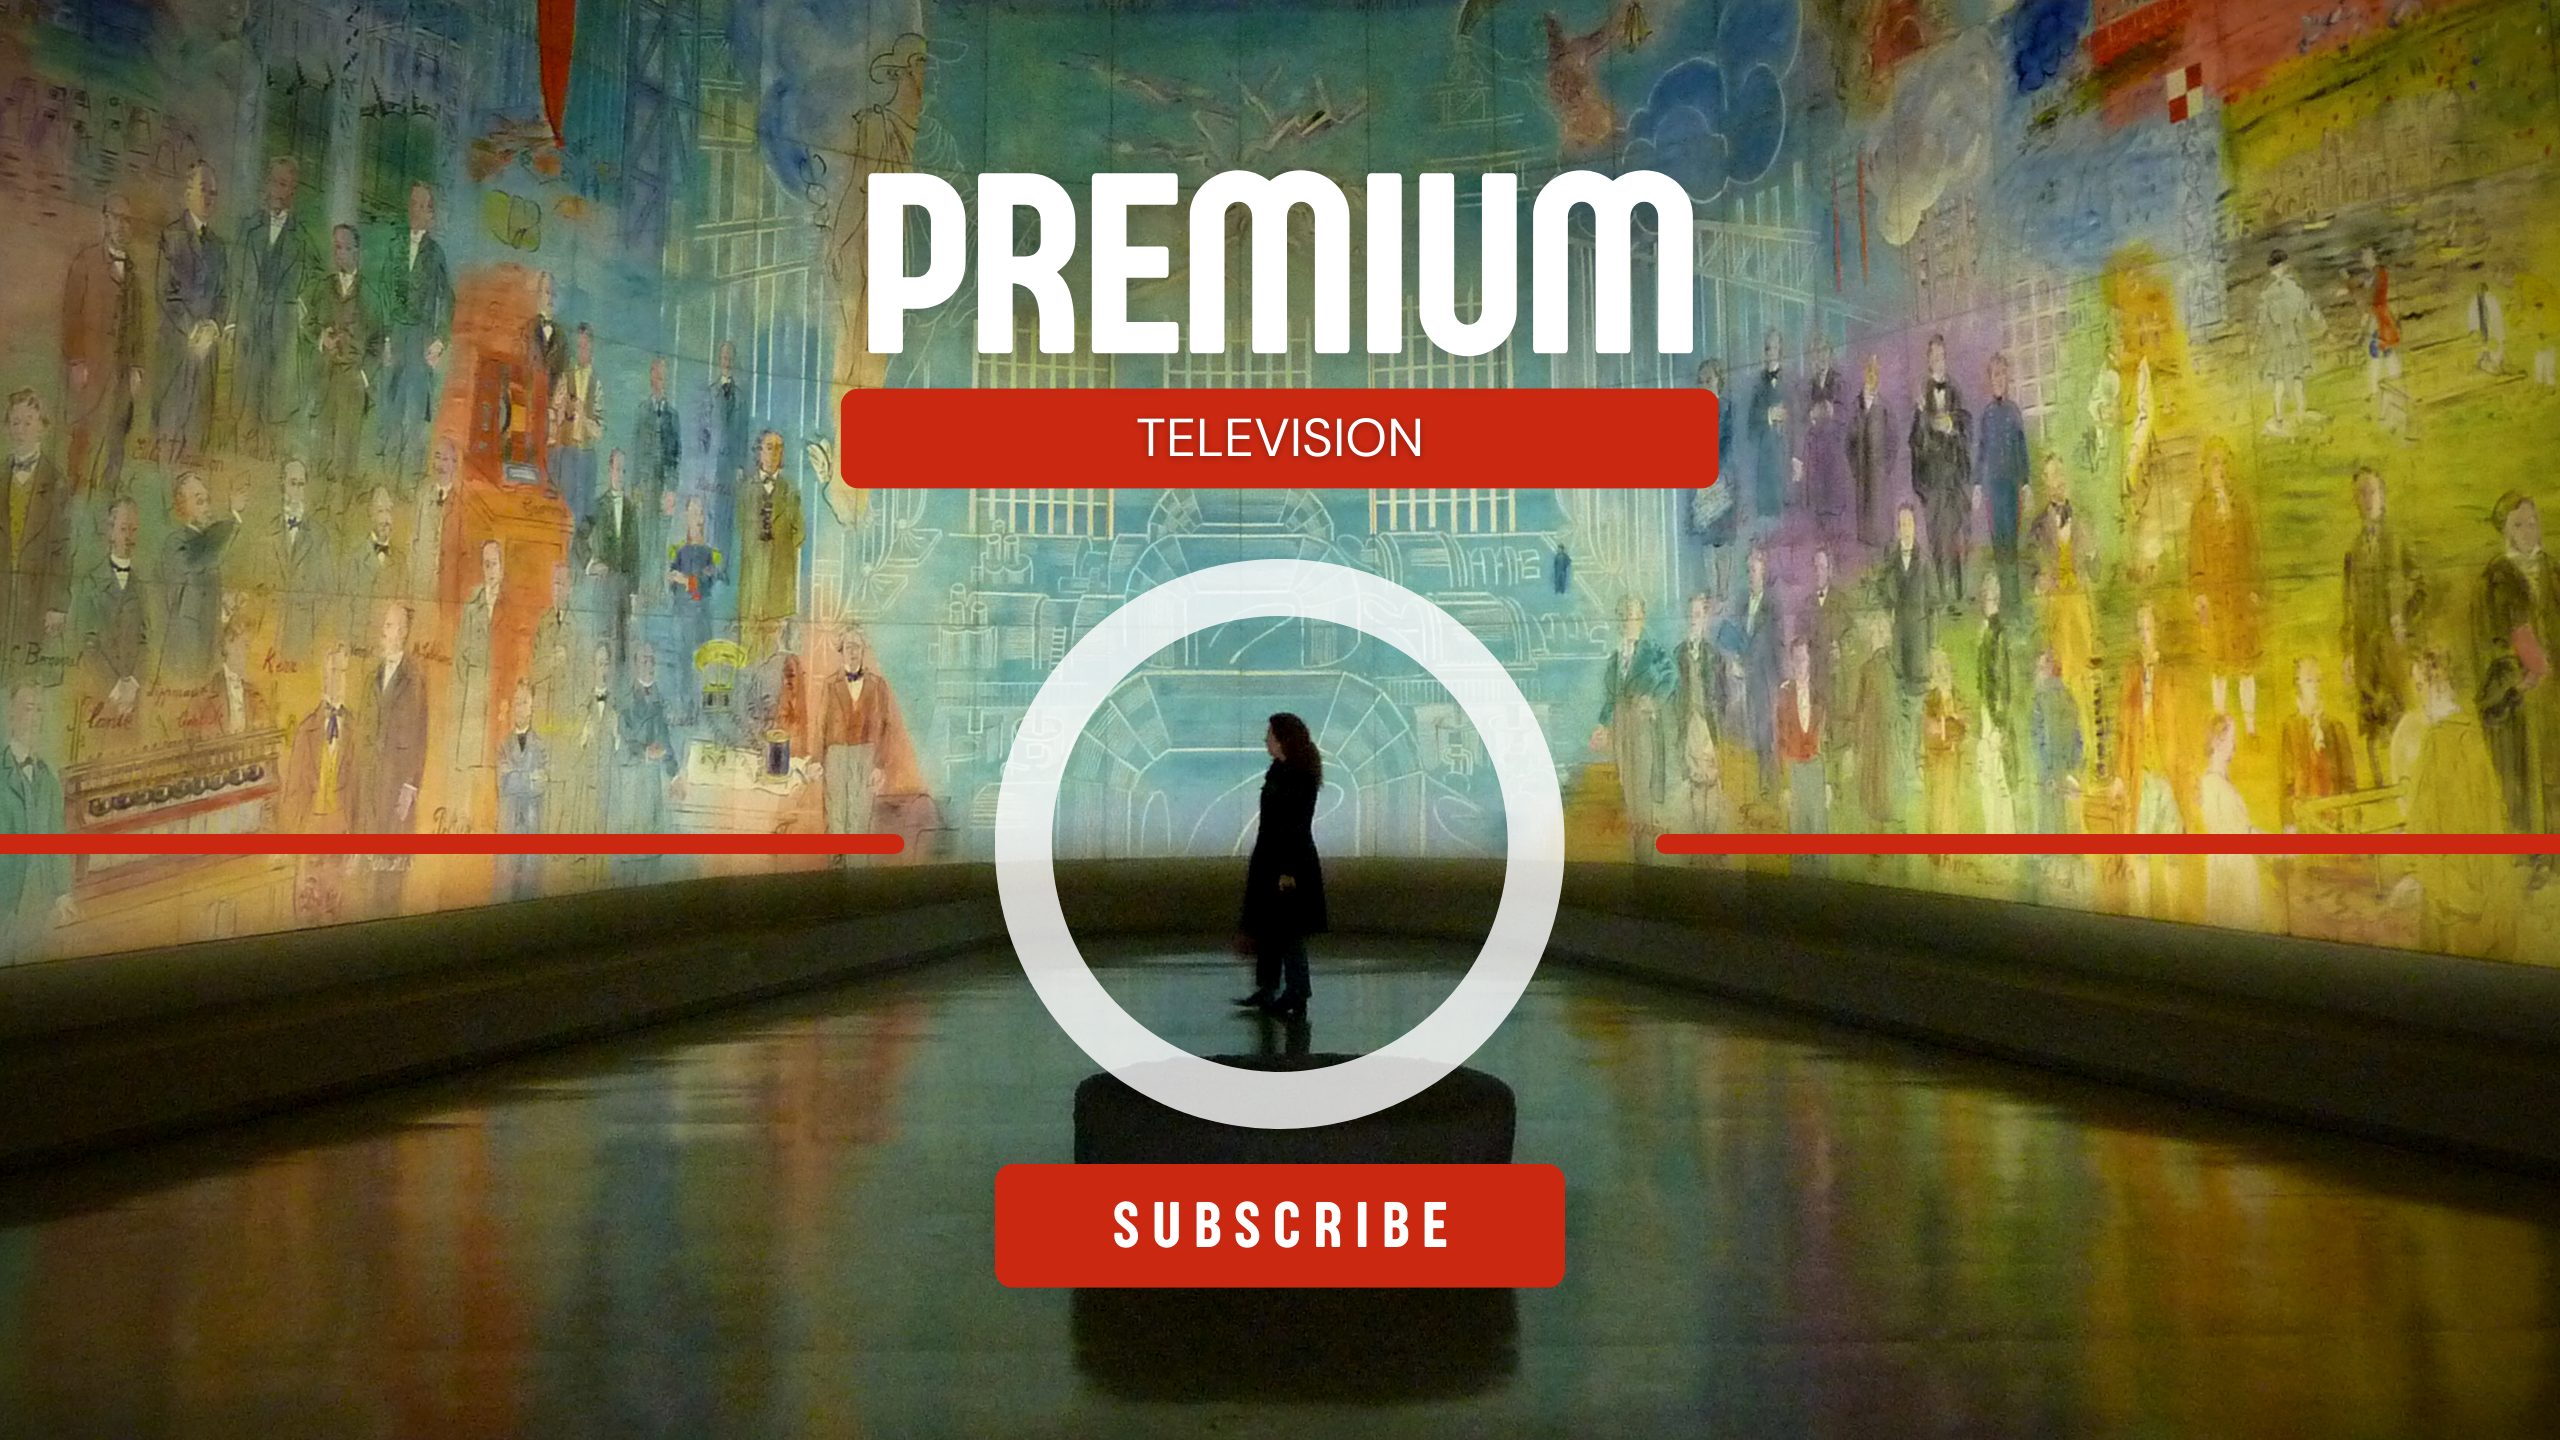 Premium Television